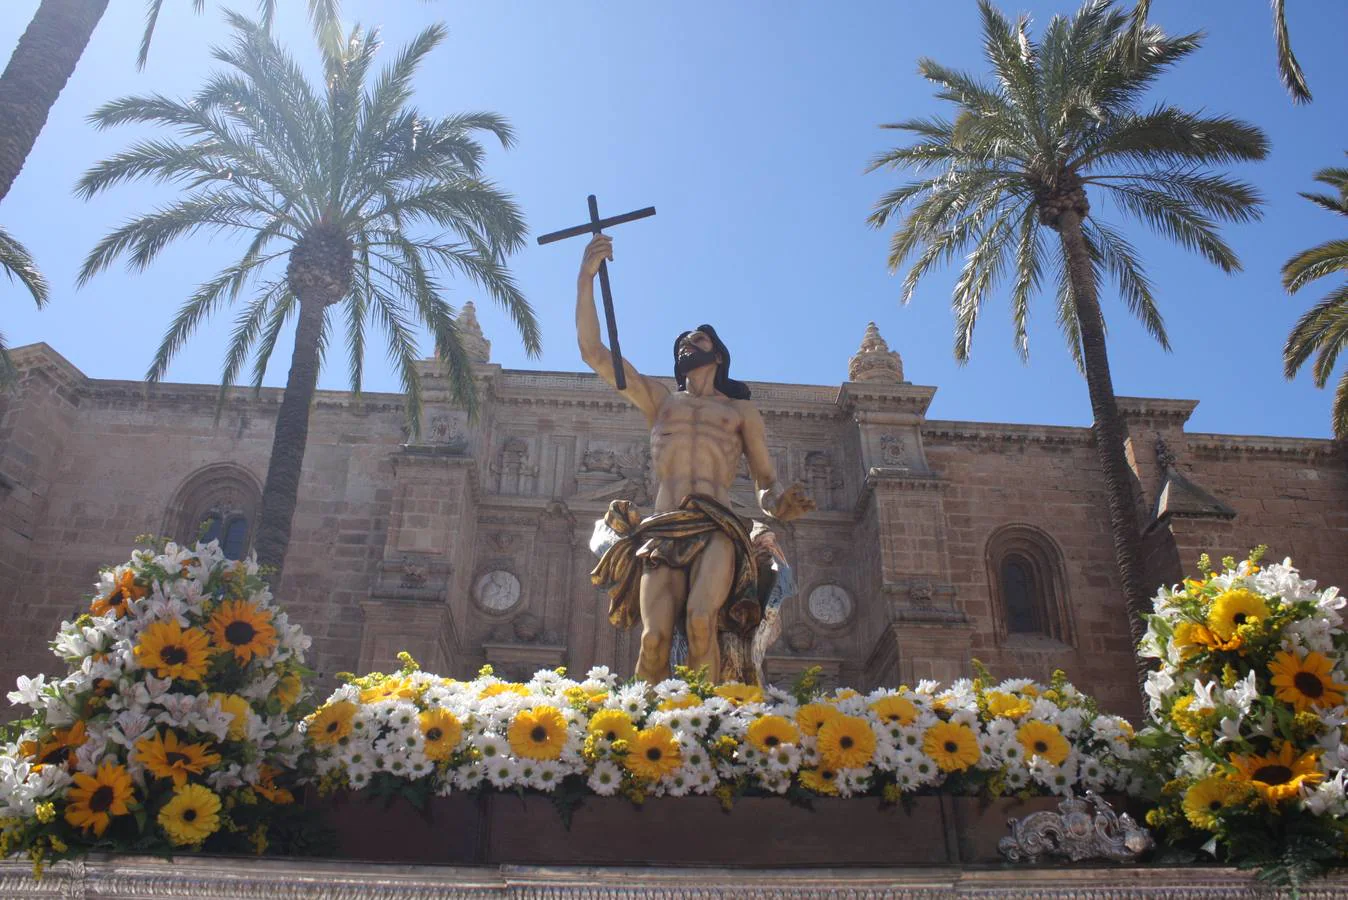 El Domingo de Resurrección en la capital se levantó apacible y soleado, un día totalmente primaveral para recibir a Cristo resucitado 